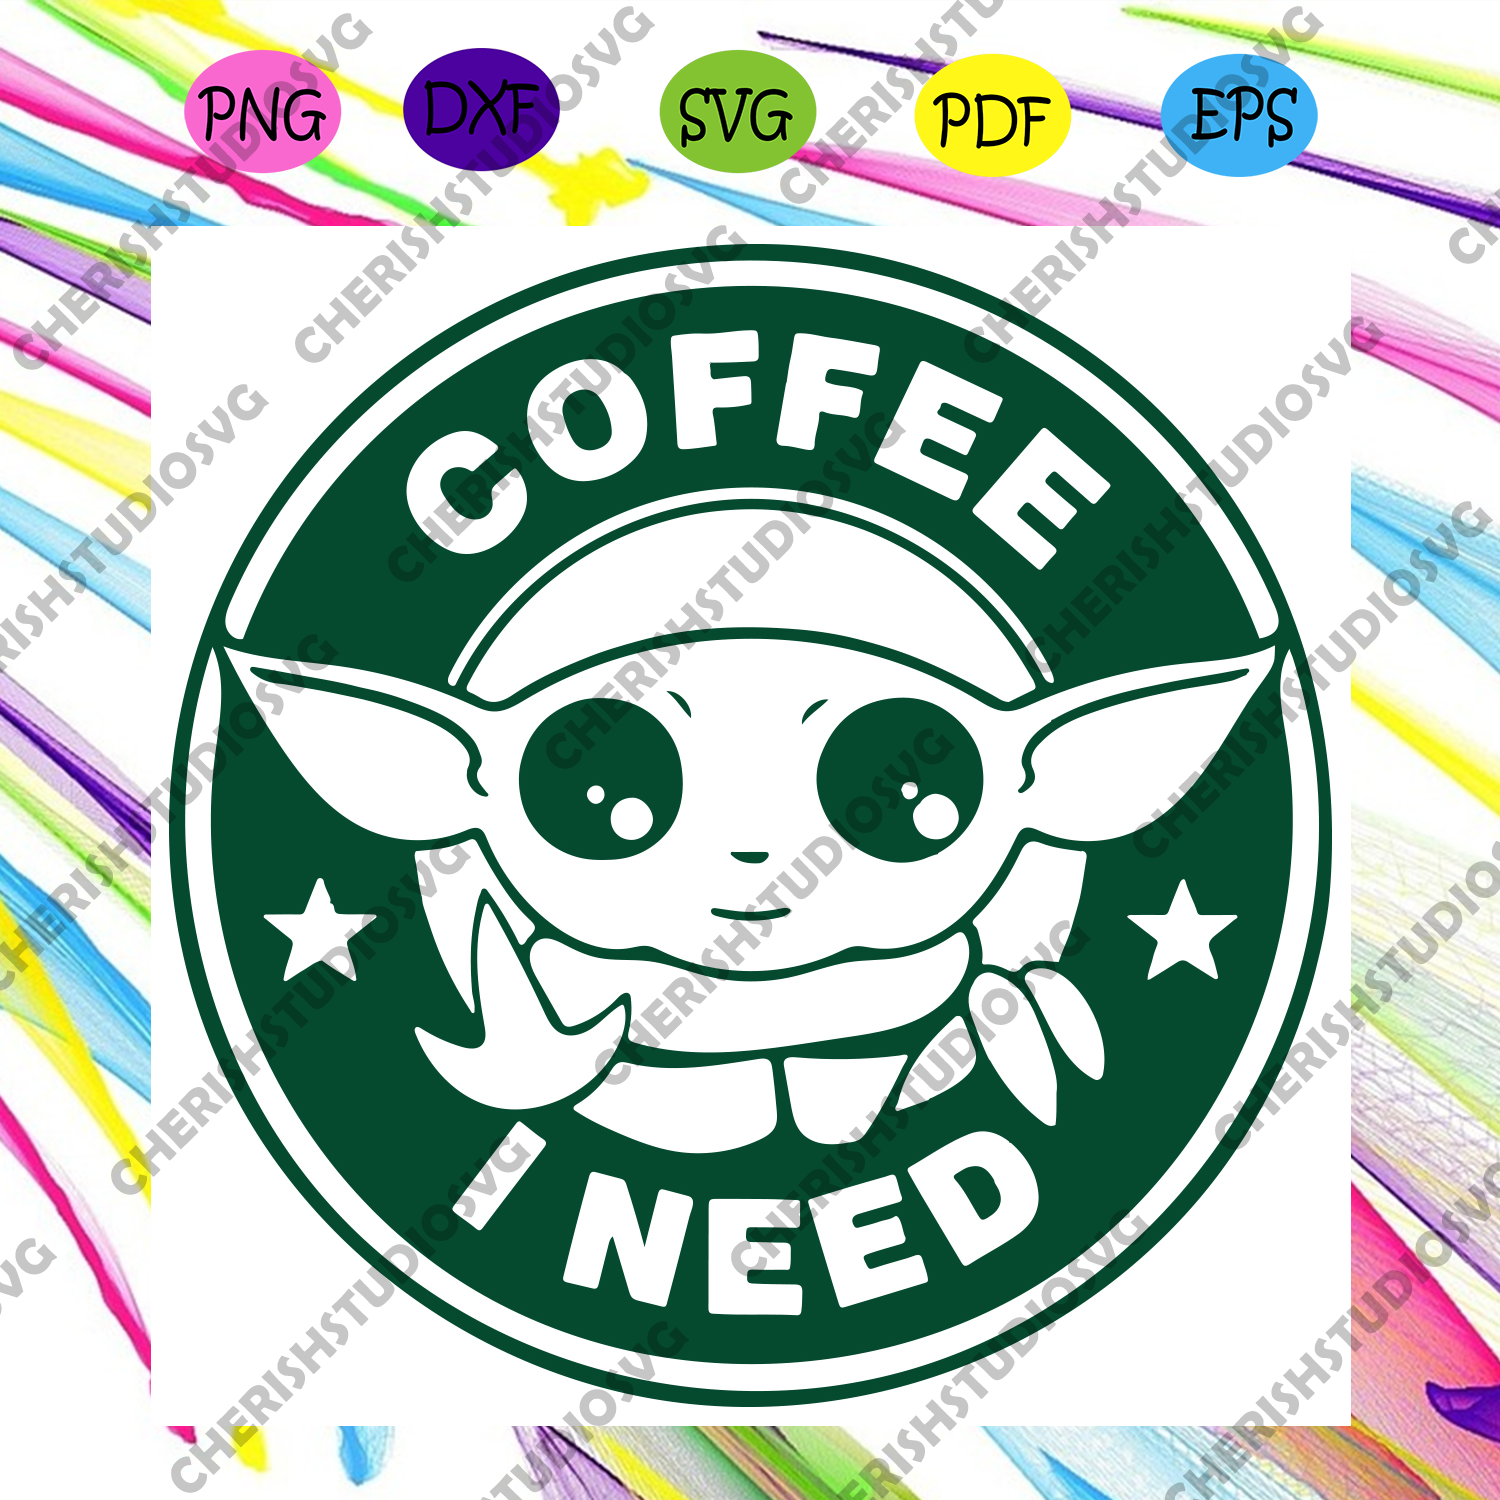 Download Baby Yoda Coffee I Need Svg Baby Yoda Svg Star War Svg Yoda Svg Coffee Svg